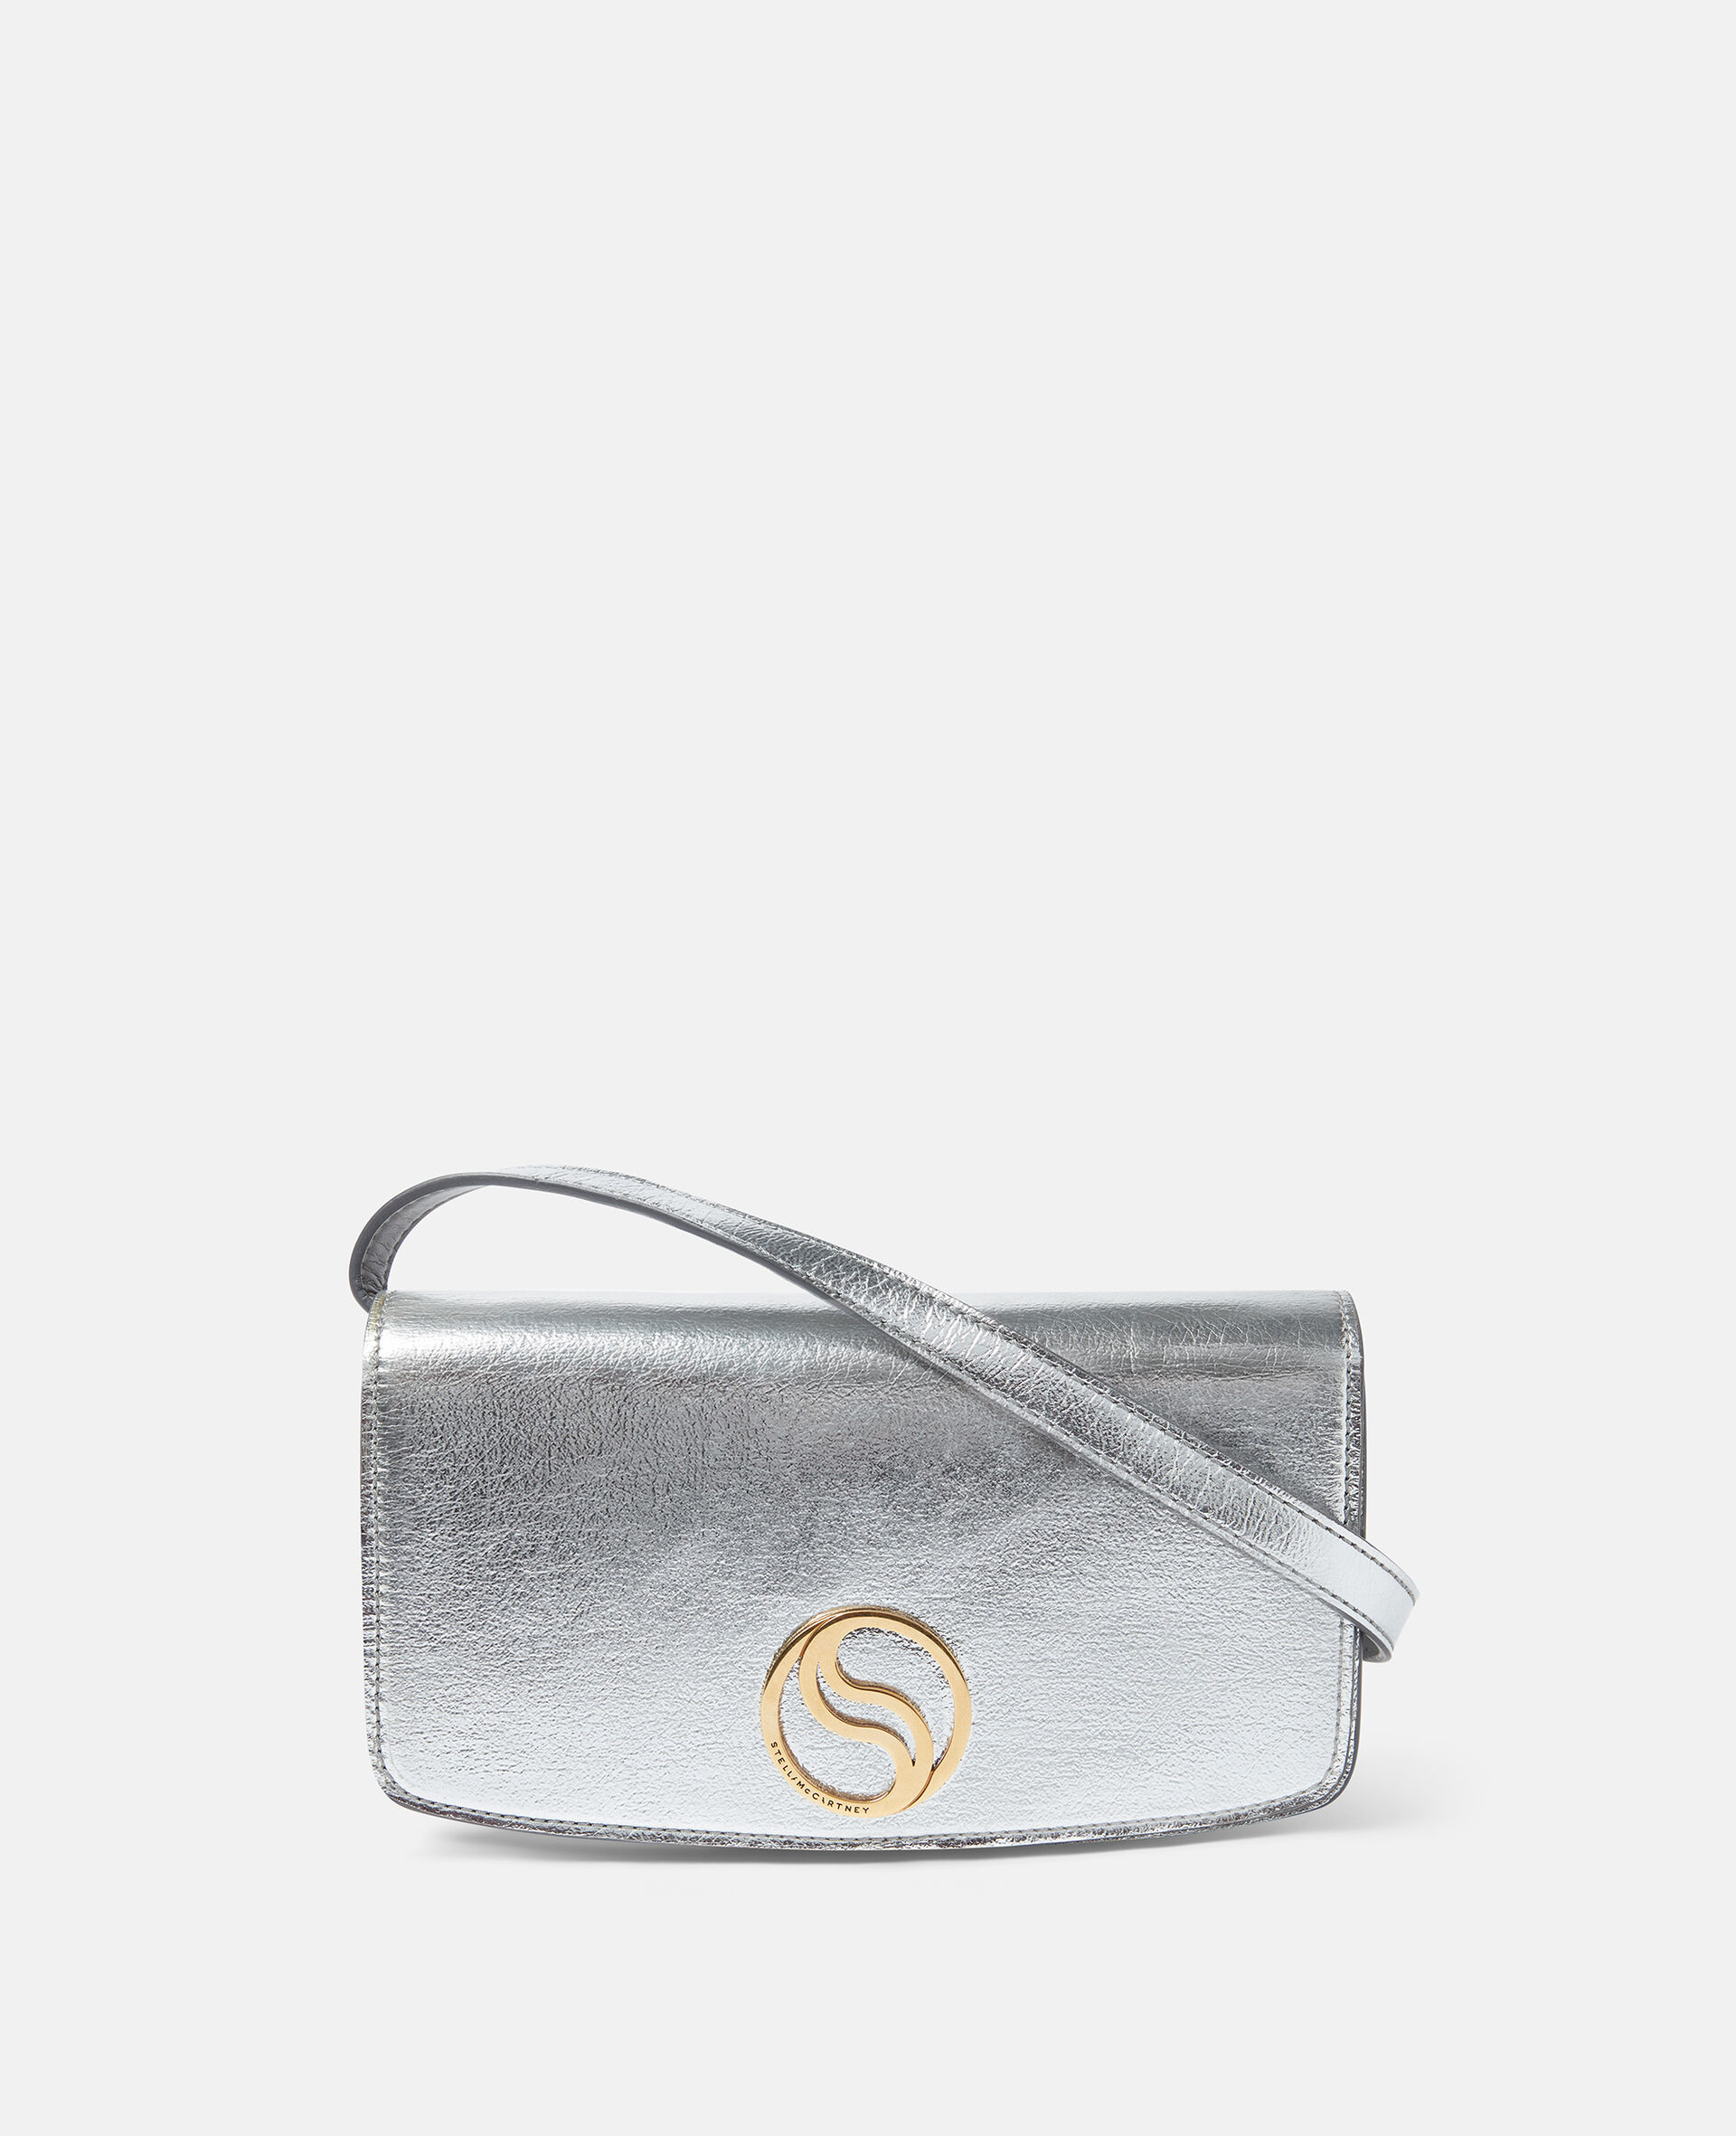 S-Wave Metallic Mini Bag-White-large image number 0